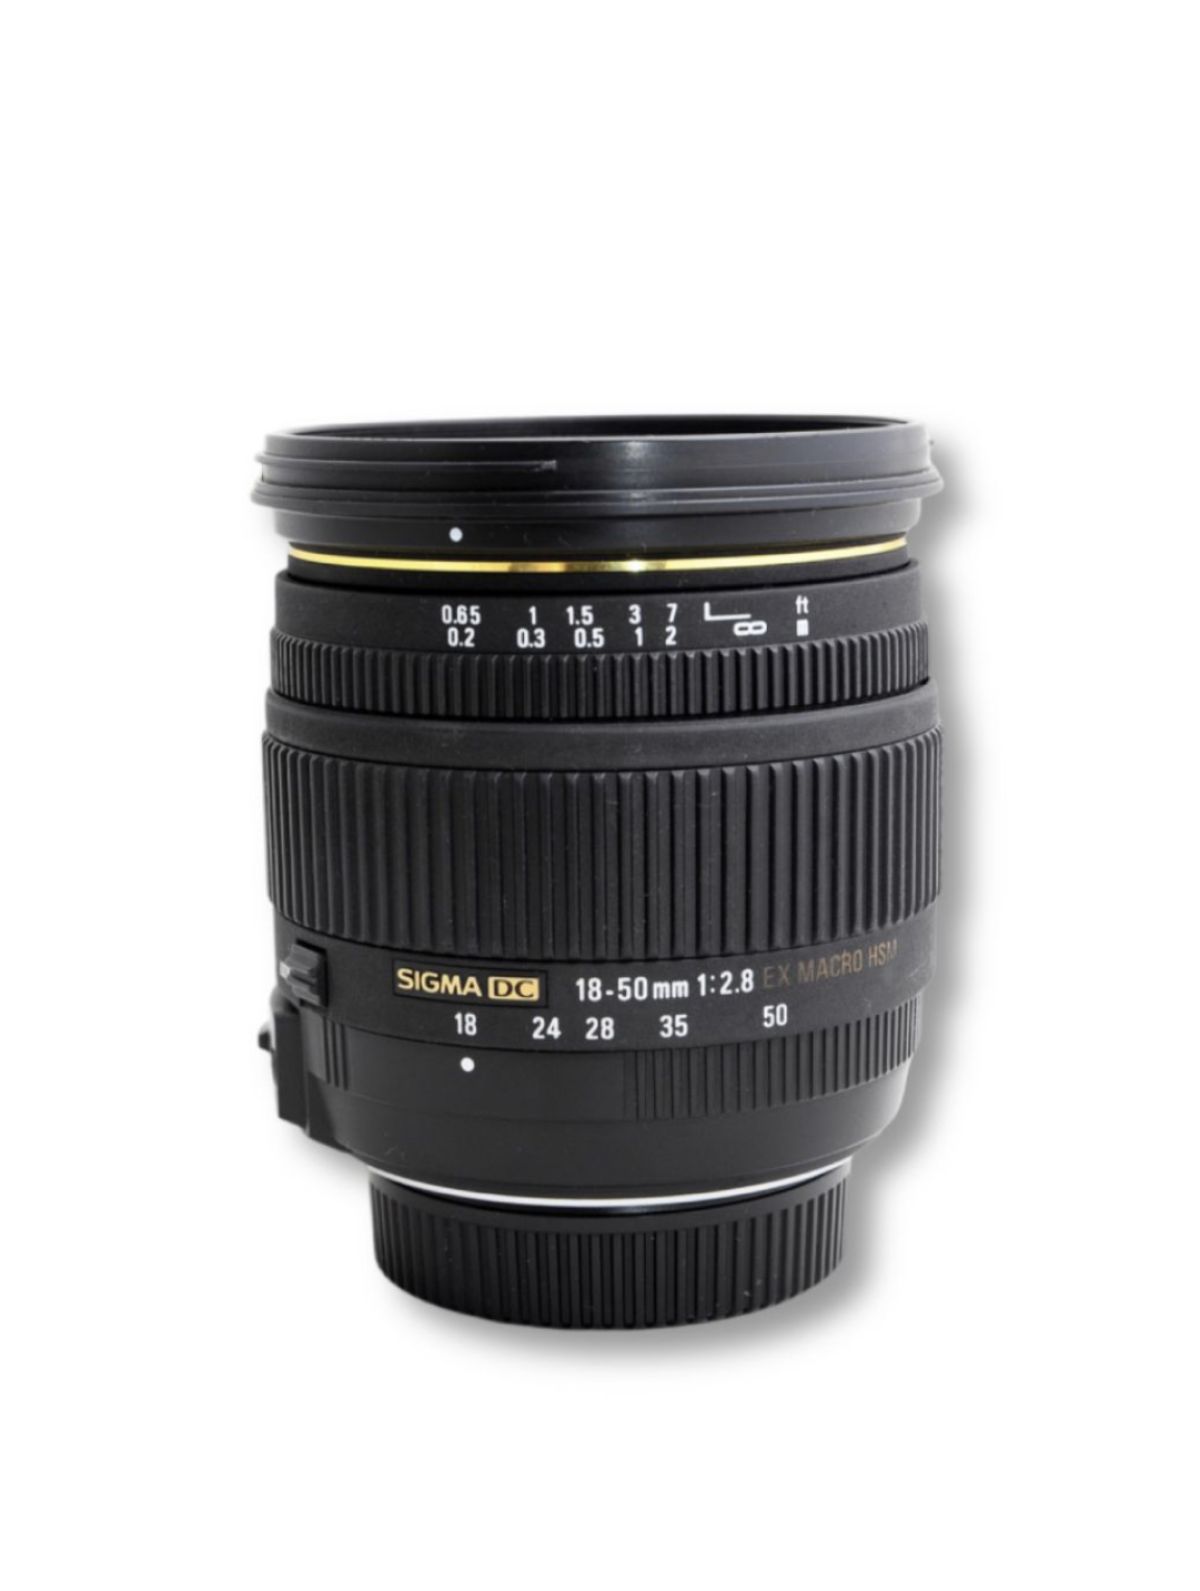 Sigma 18-50mm 1:2.8 EX Macro pour Canon Reflex